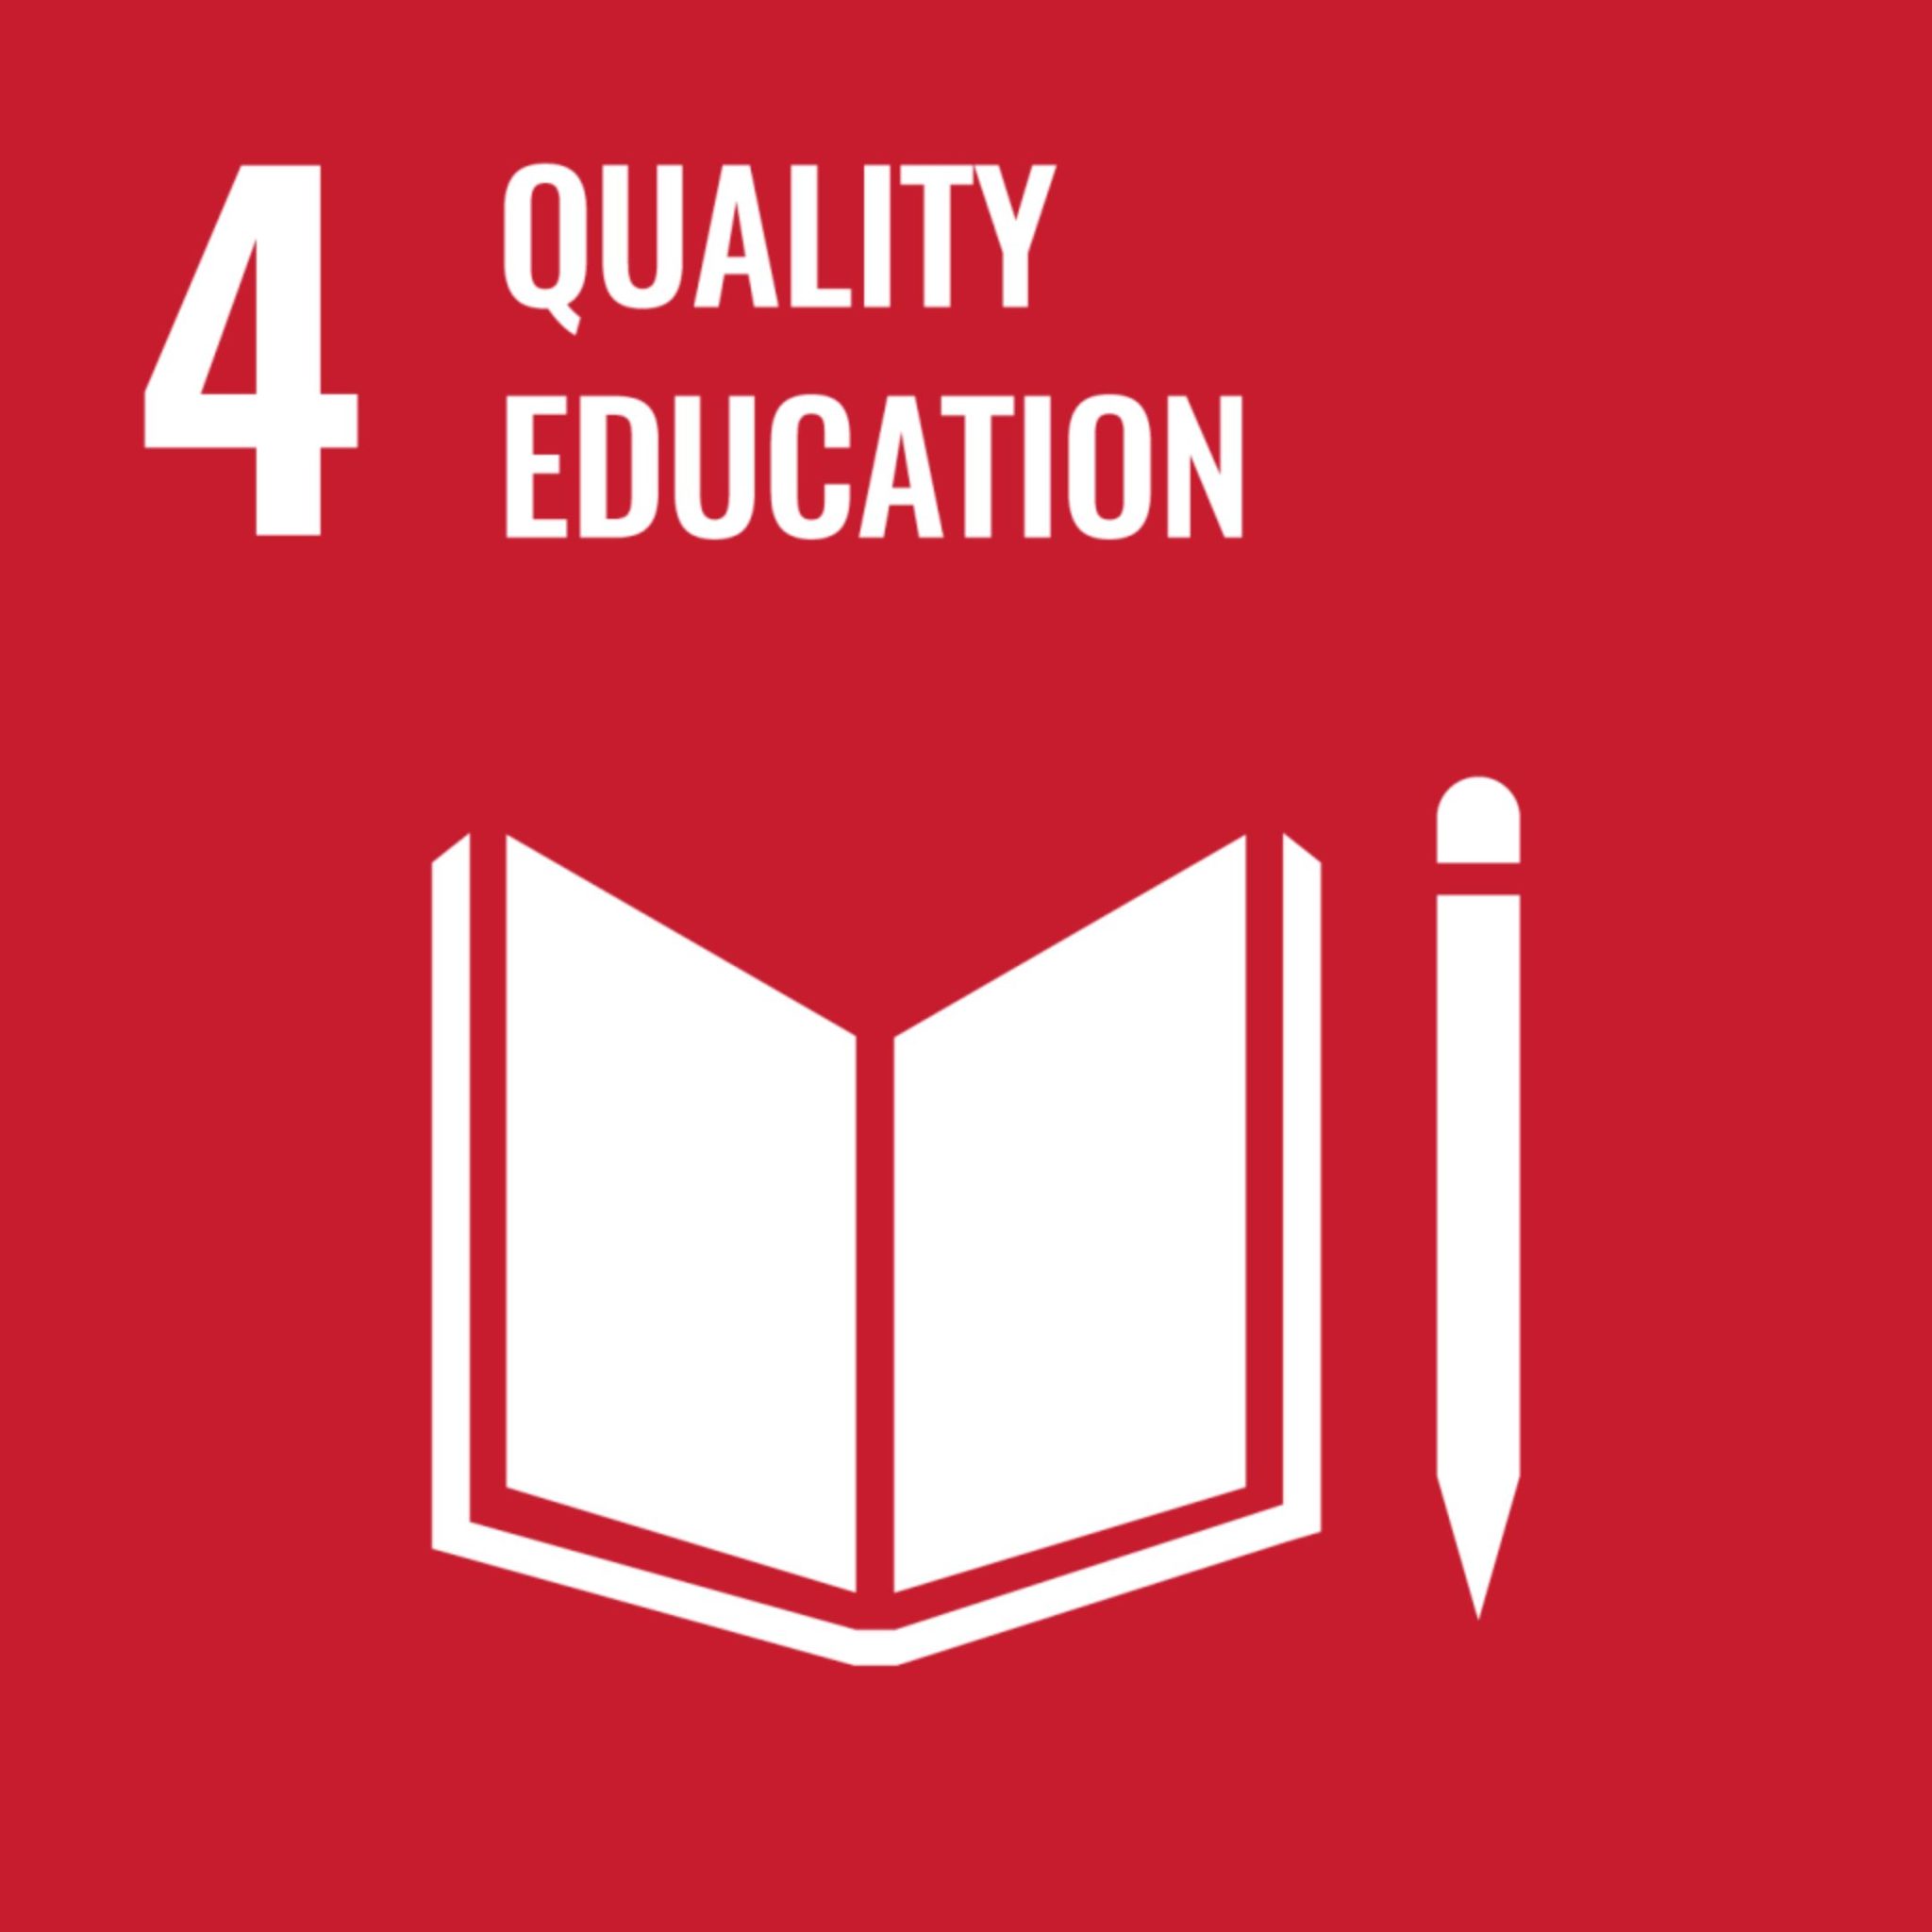 Quality Education EU sustainability goals